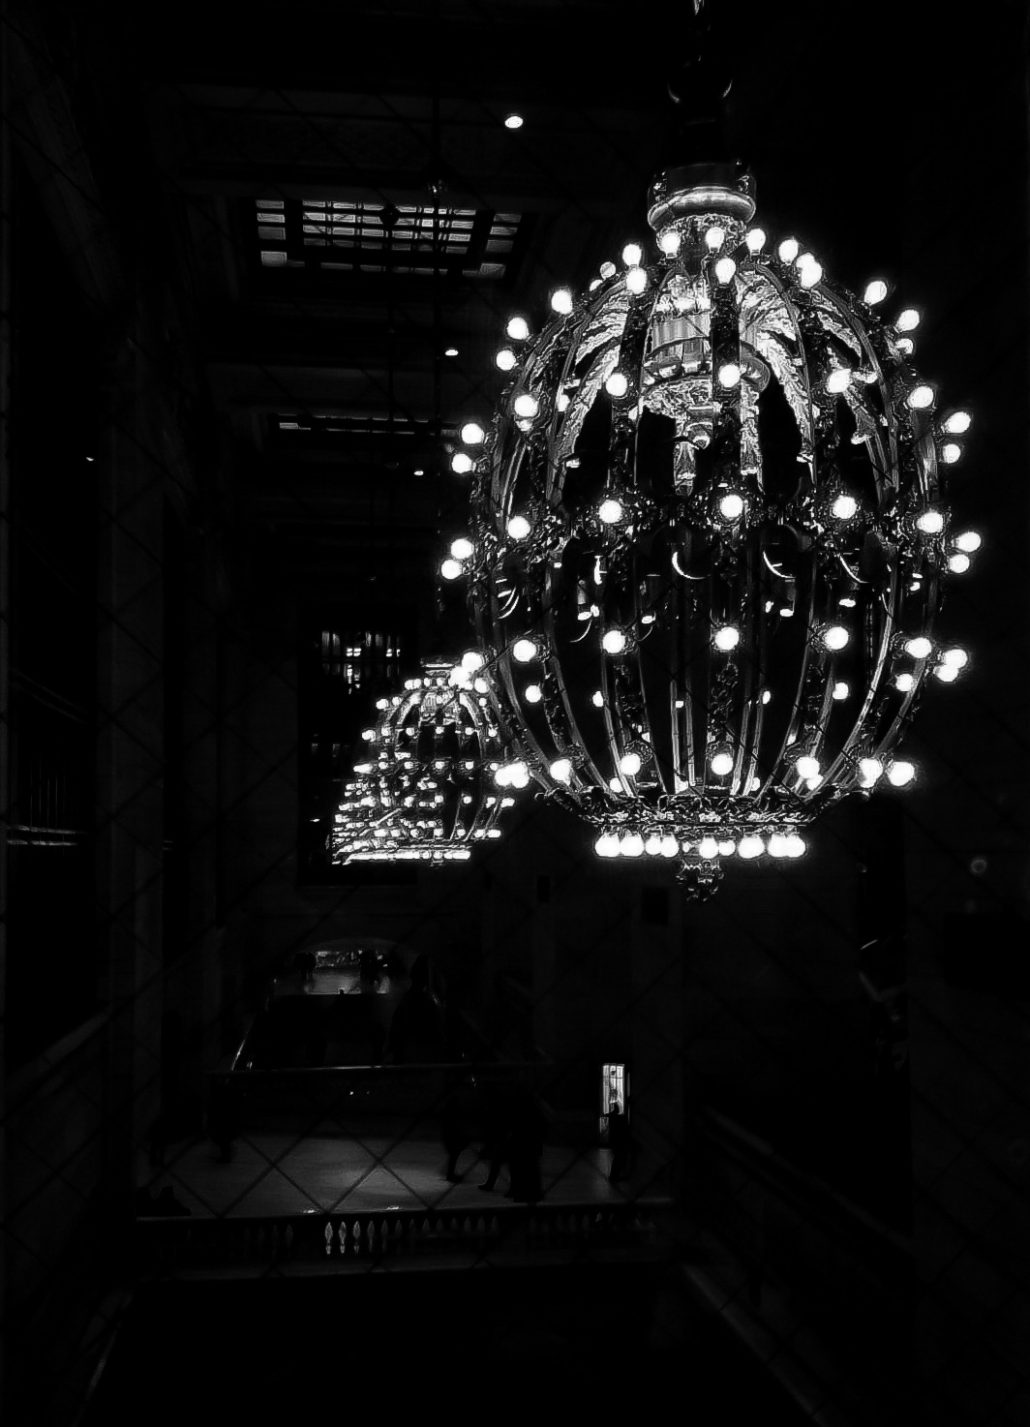 Grand Central Station lights